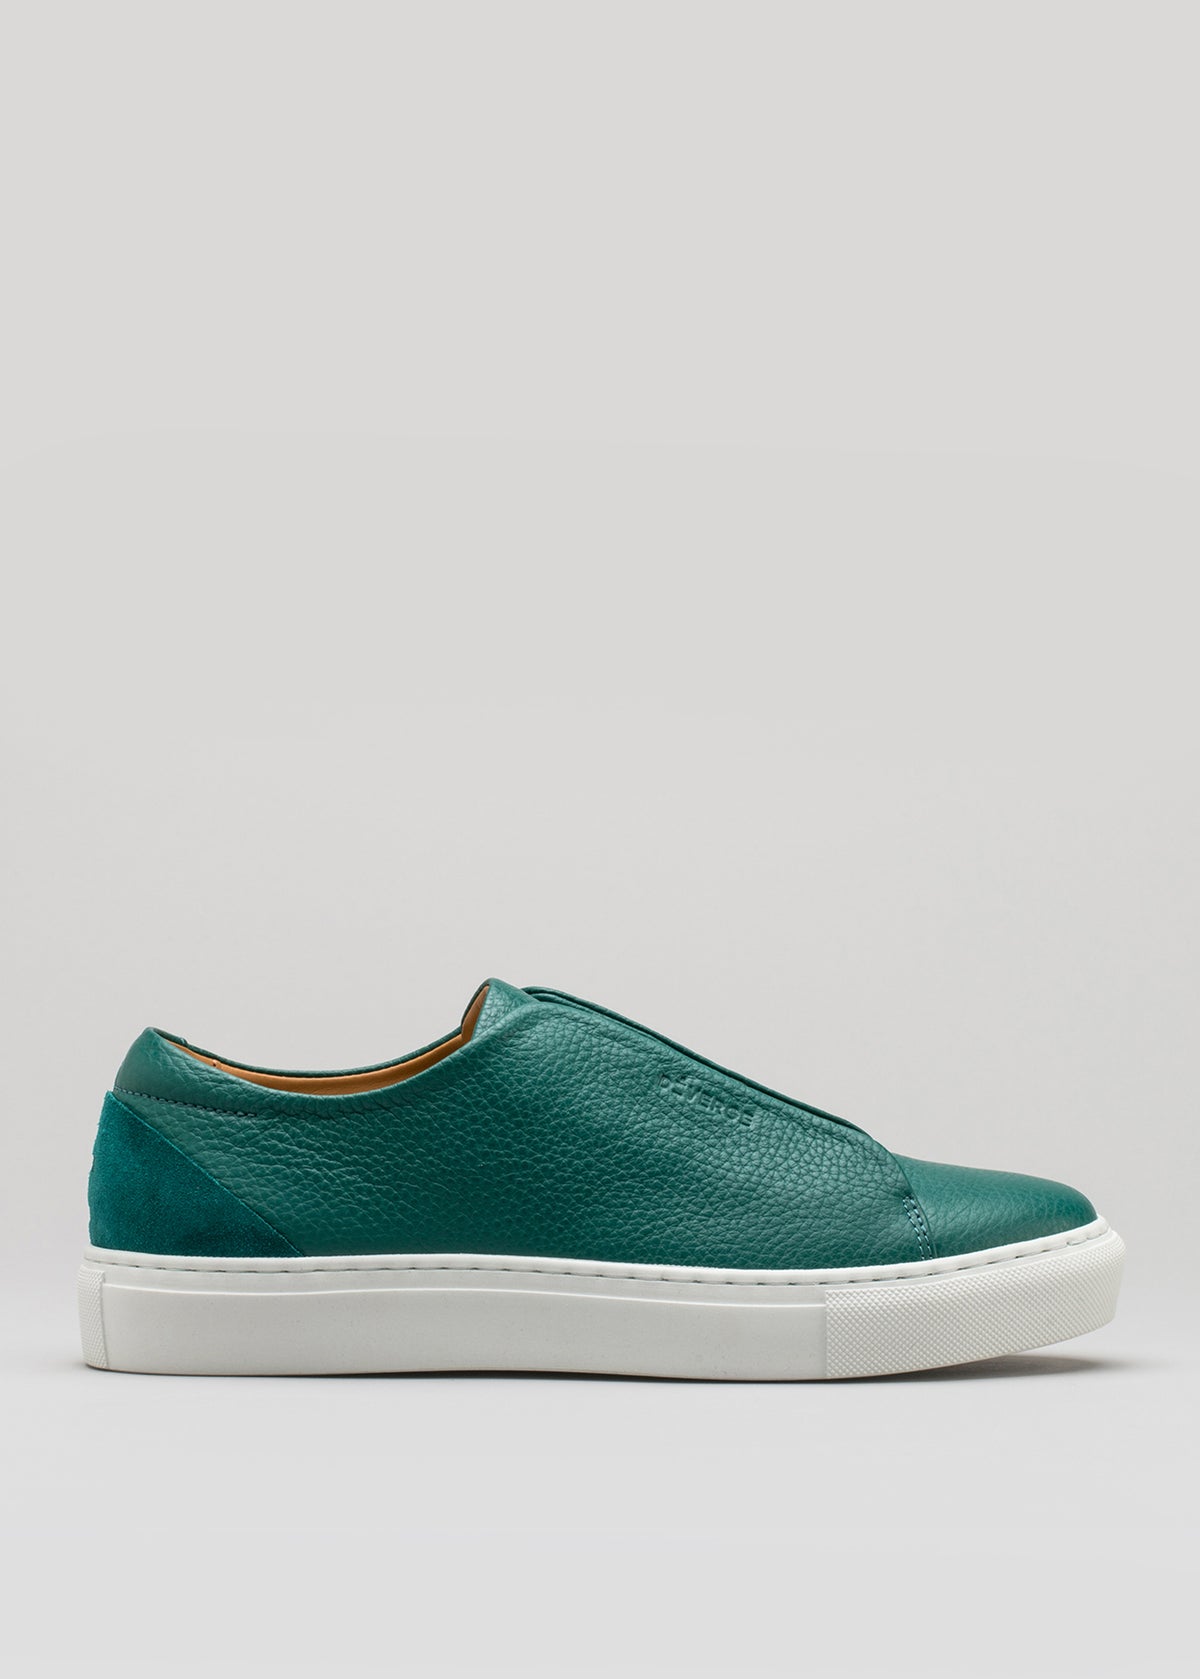 cuir premium vert émeraude low sneakers en clean design sideview